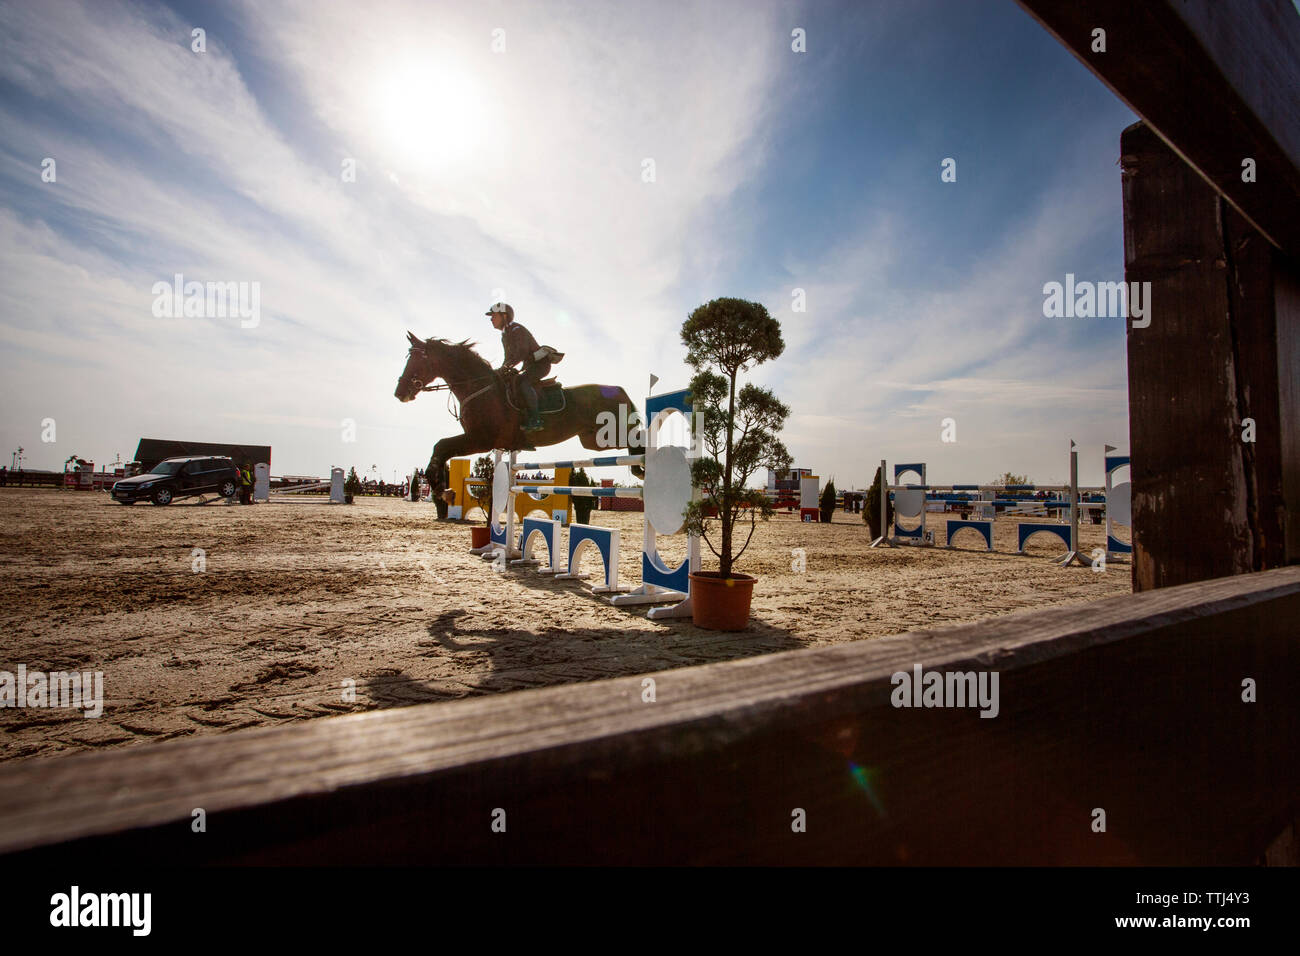 Vista lateral del hombre a caballo sobre obstáculo contra el cielo Foto de stock